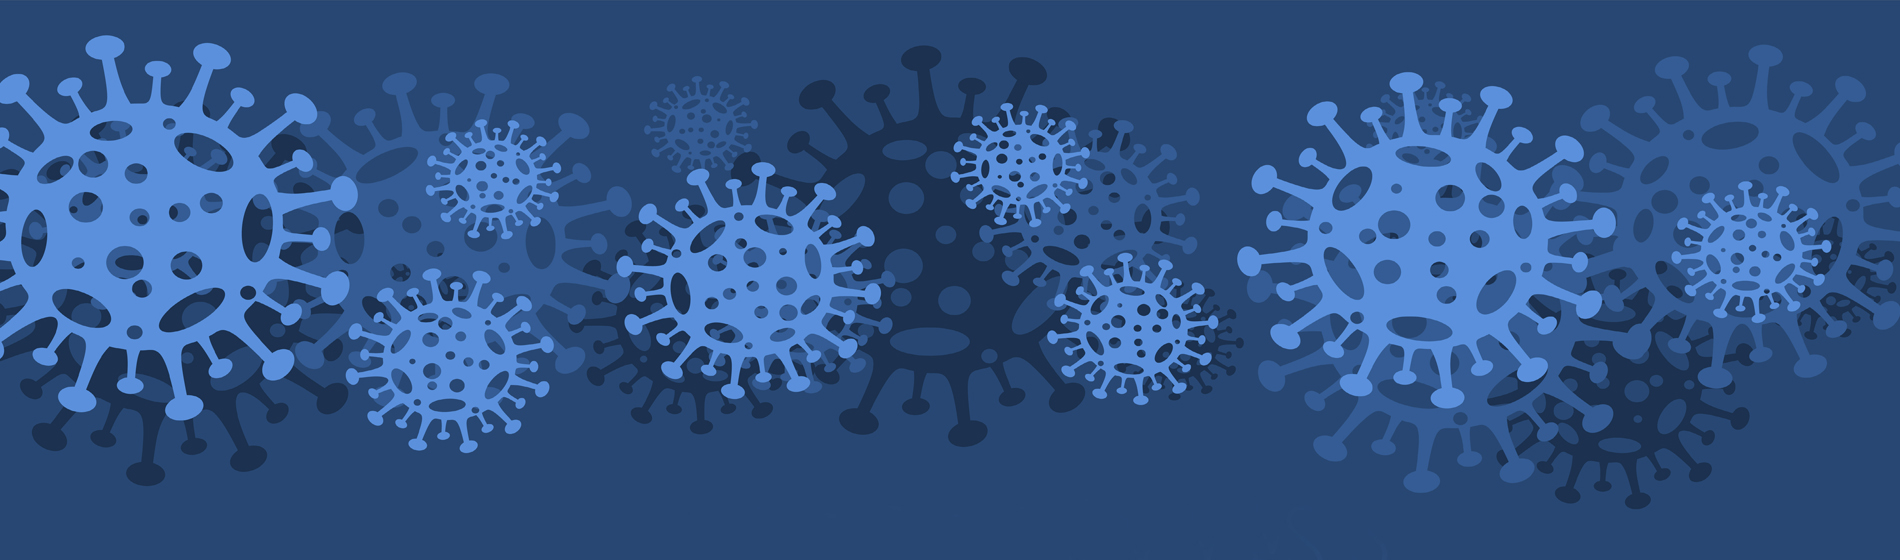 animated viruses